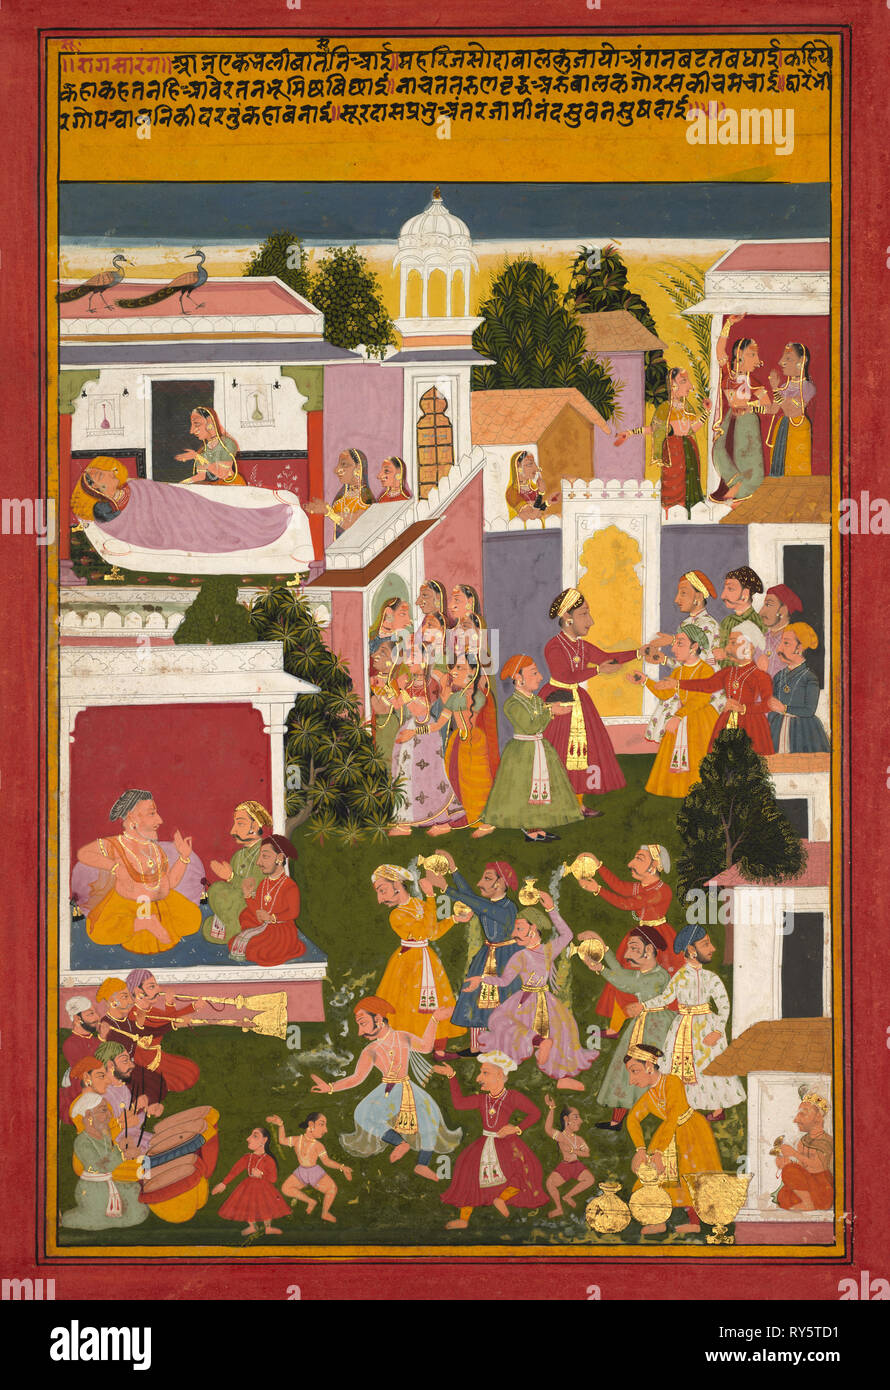 La nascita di Krishna, da un Sursagar di Surdas, c. 1700. India nordoccidentale, Rajasthan, scuola di Mewar, inizio del XVIII secolo. Acquerello opaco e oro su carta; immagine: 33,6 x 22,2 cm (13 1/4 x 8 3/4 in.); complessivo: 37 x 25,4 cm (14 9/16 x 10 in.); con mat: 49 x 36,3 cm (19 5/16 x 14 5/16 in Foto Stock